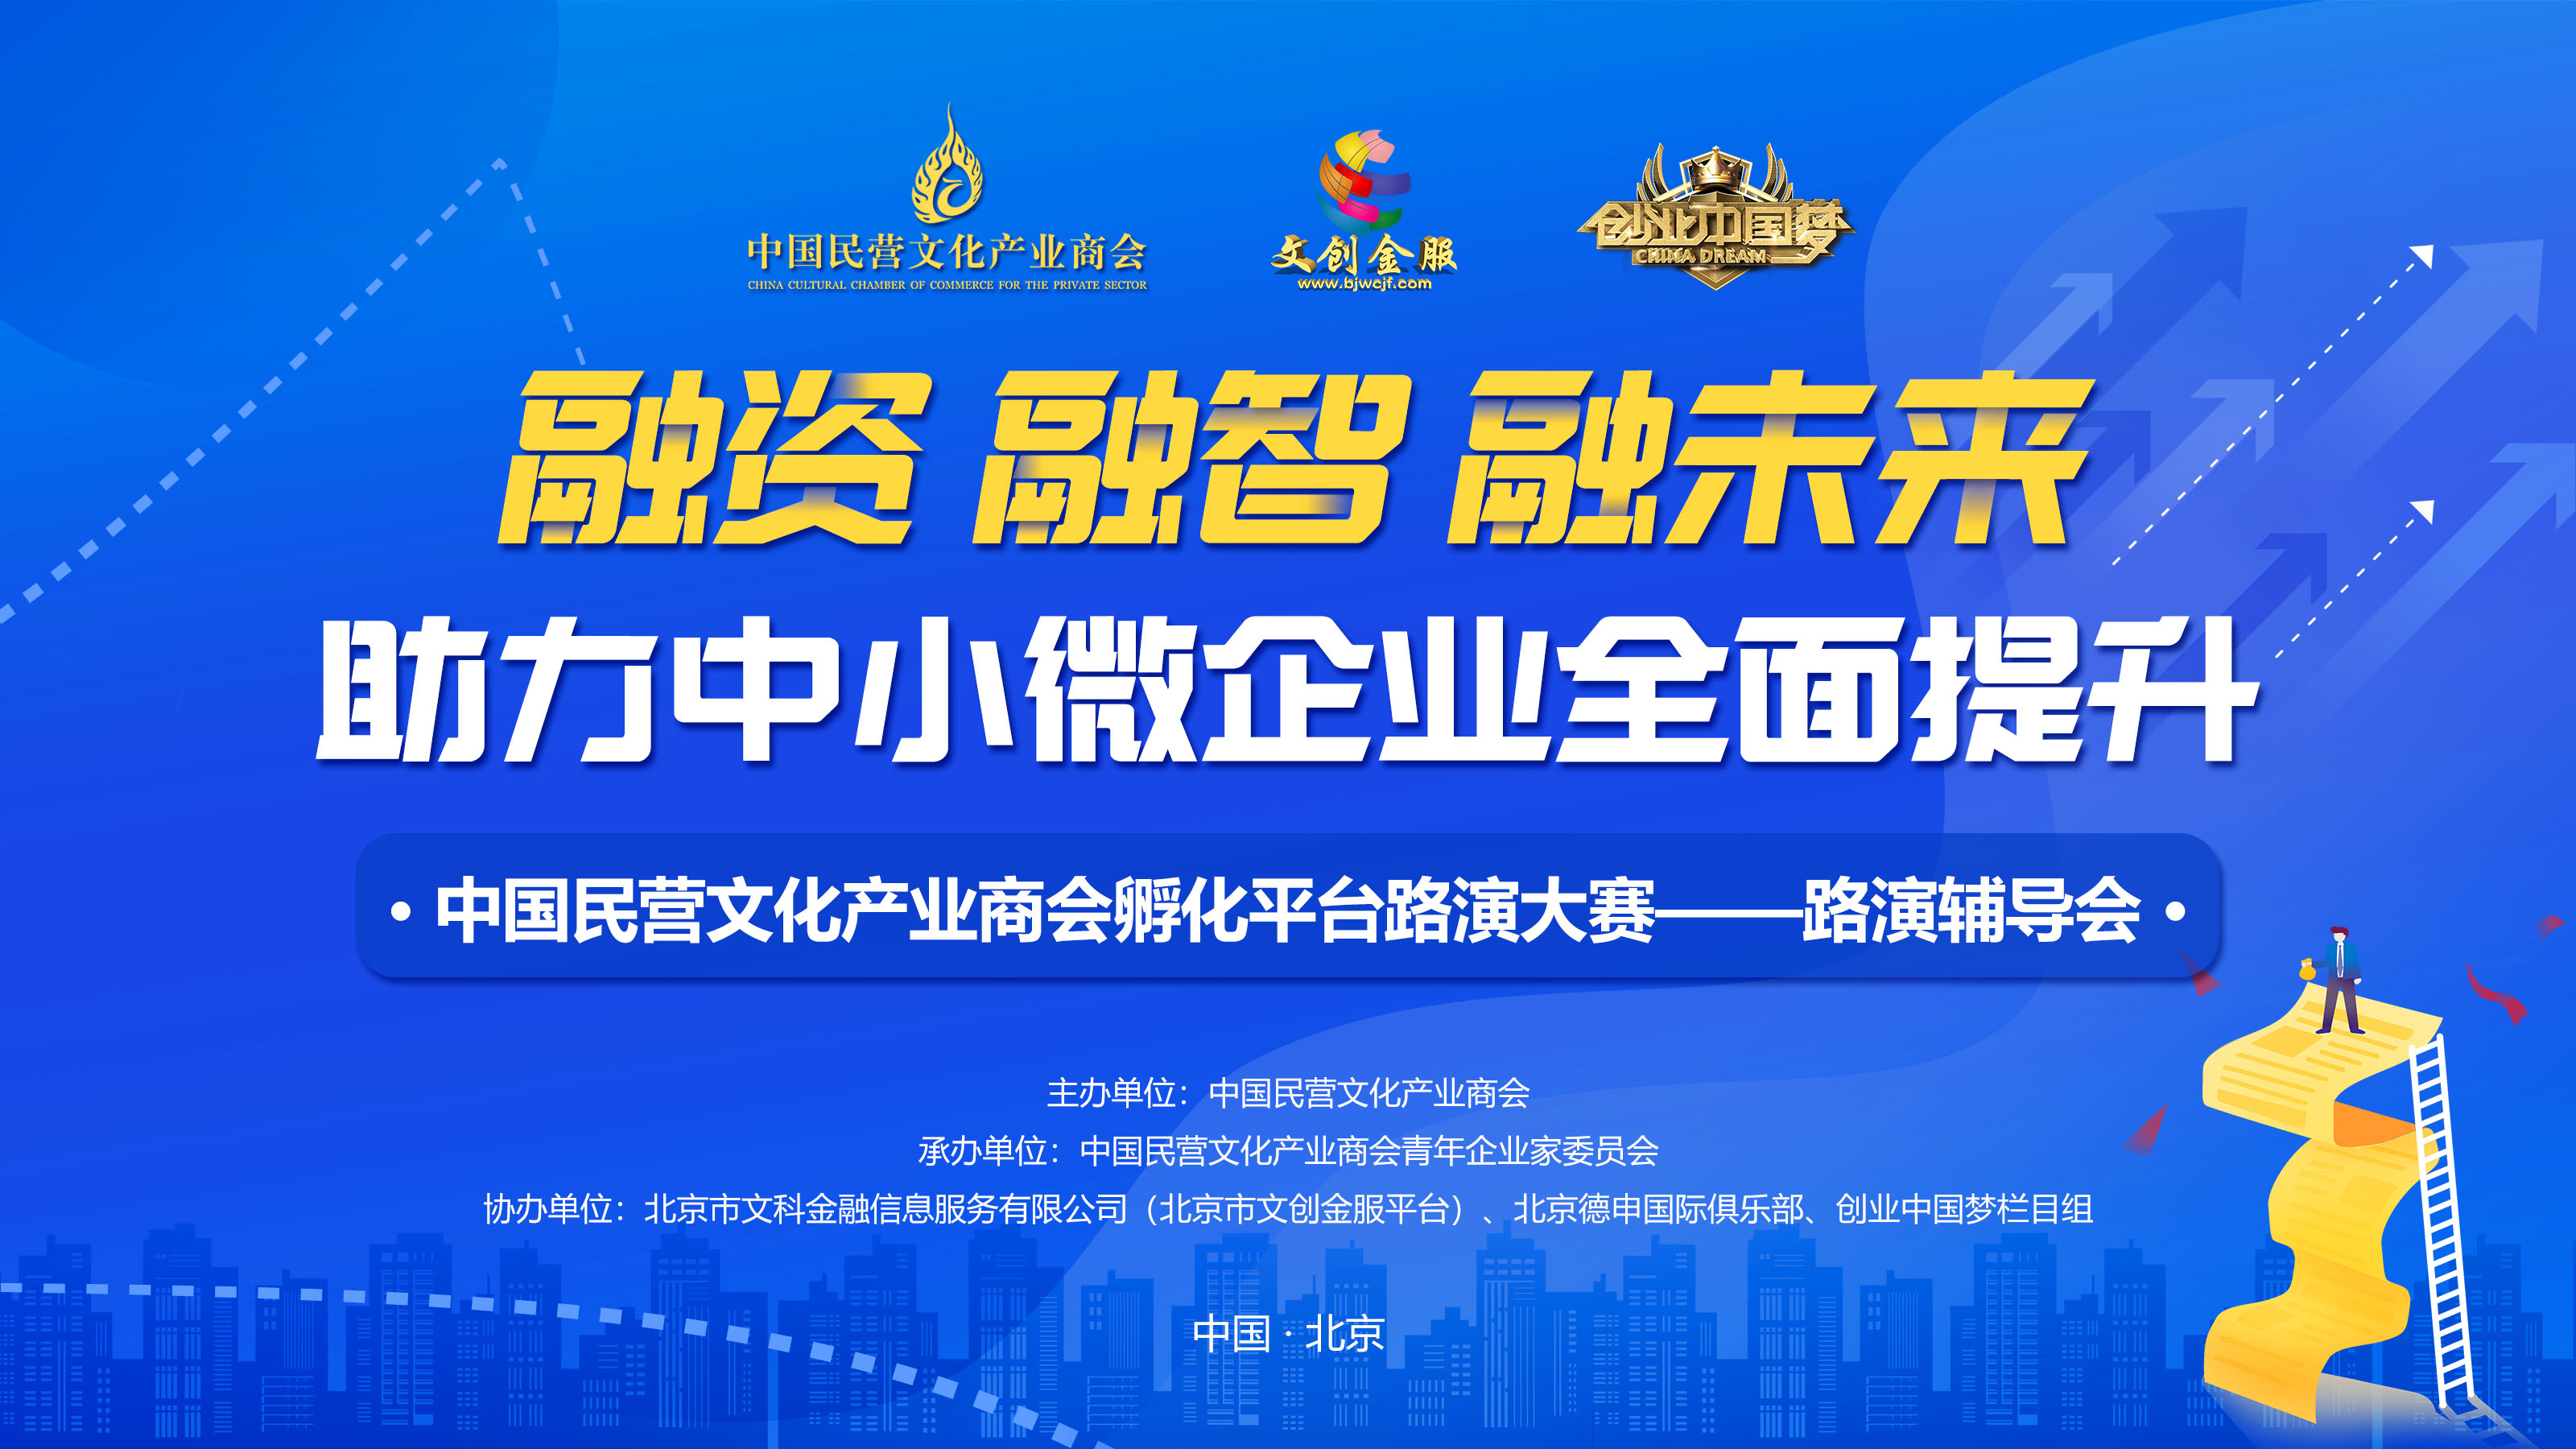 中国民营文化产业商会孵化平台路演大赛——路演辅导会在京举办